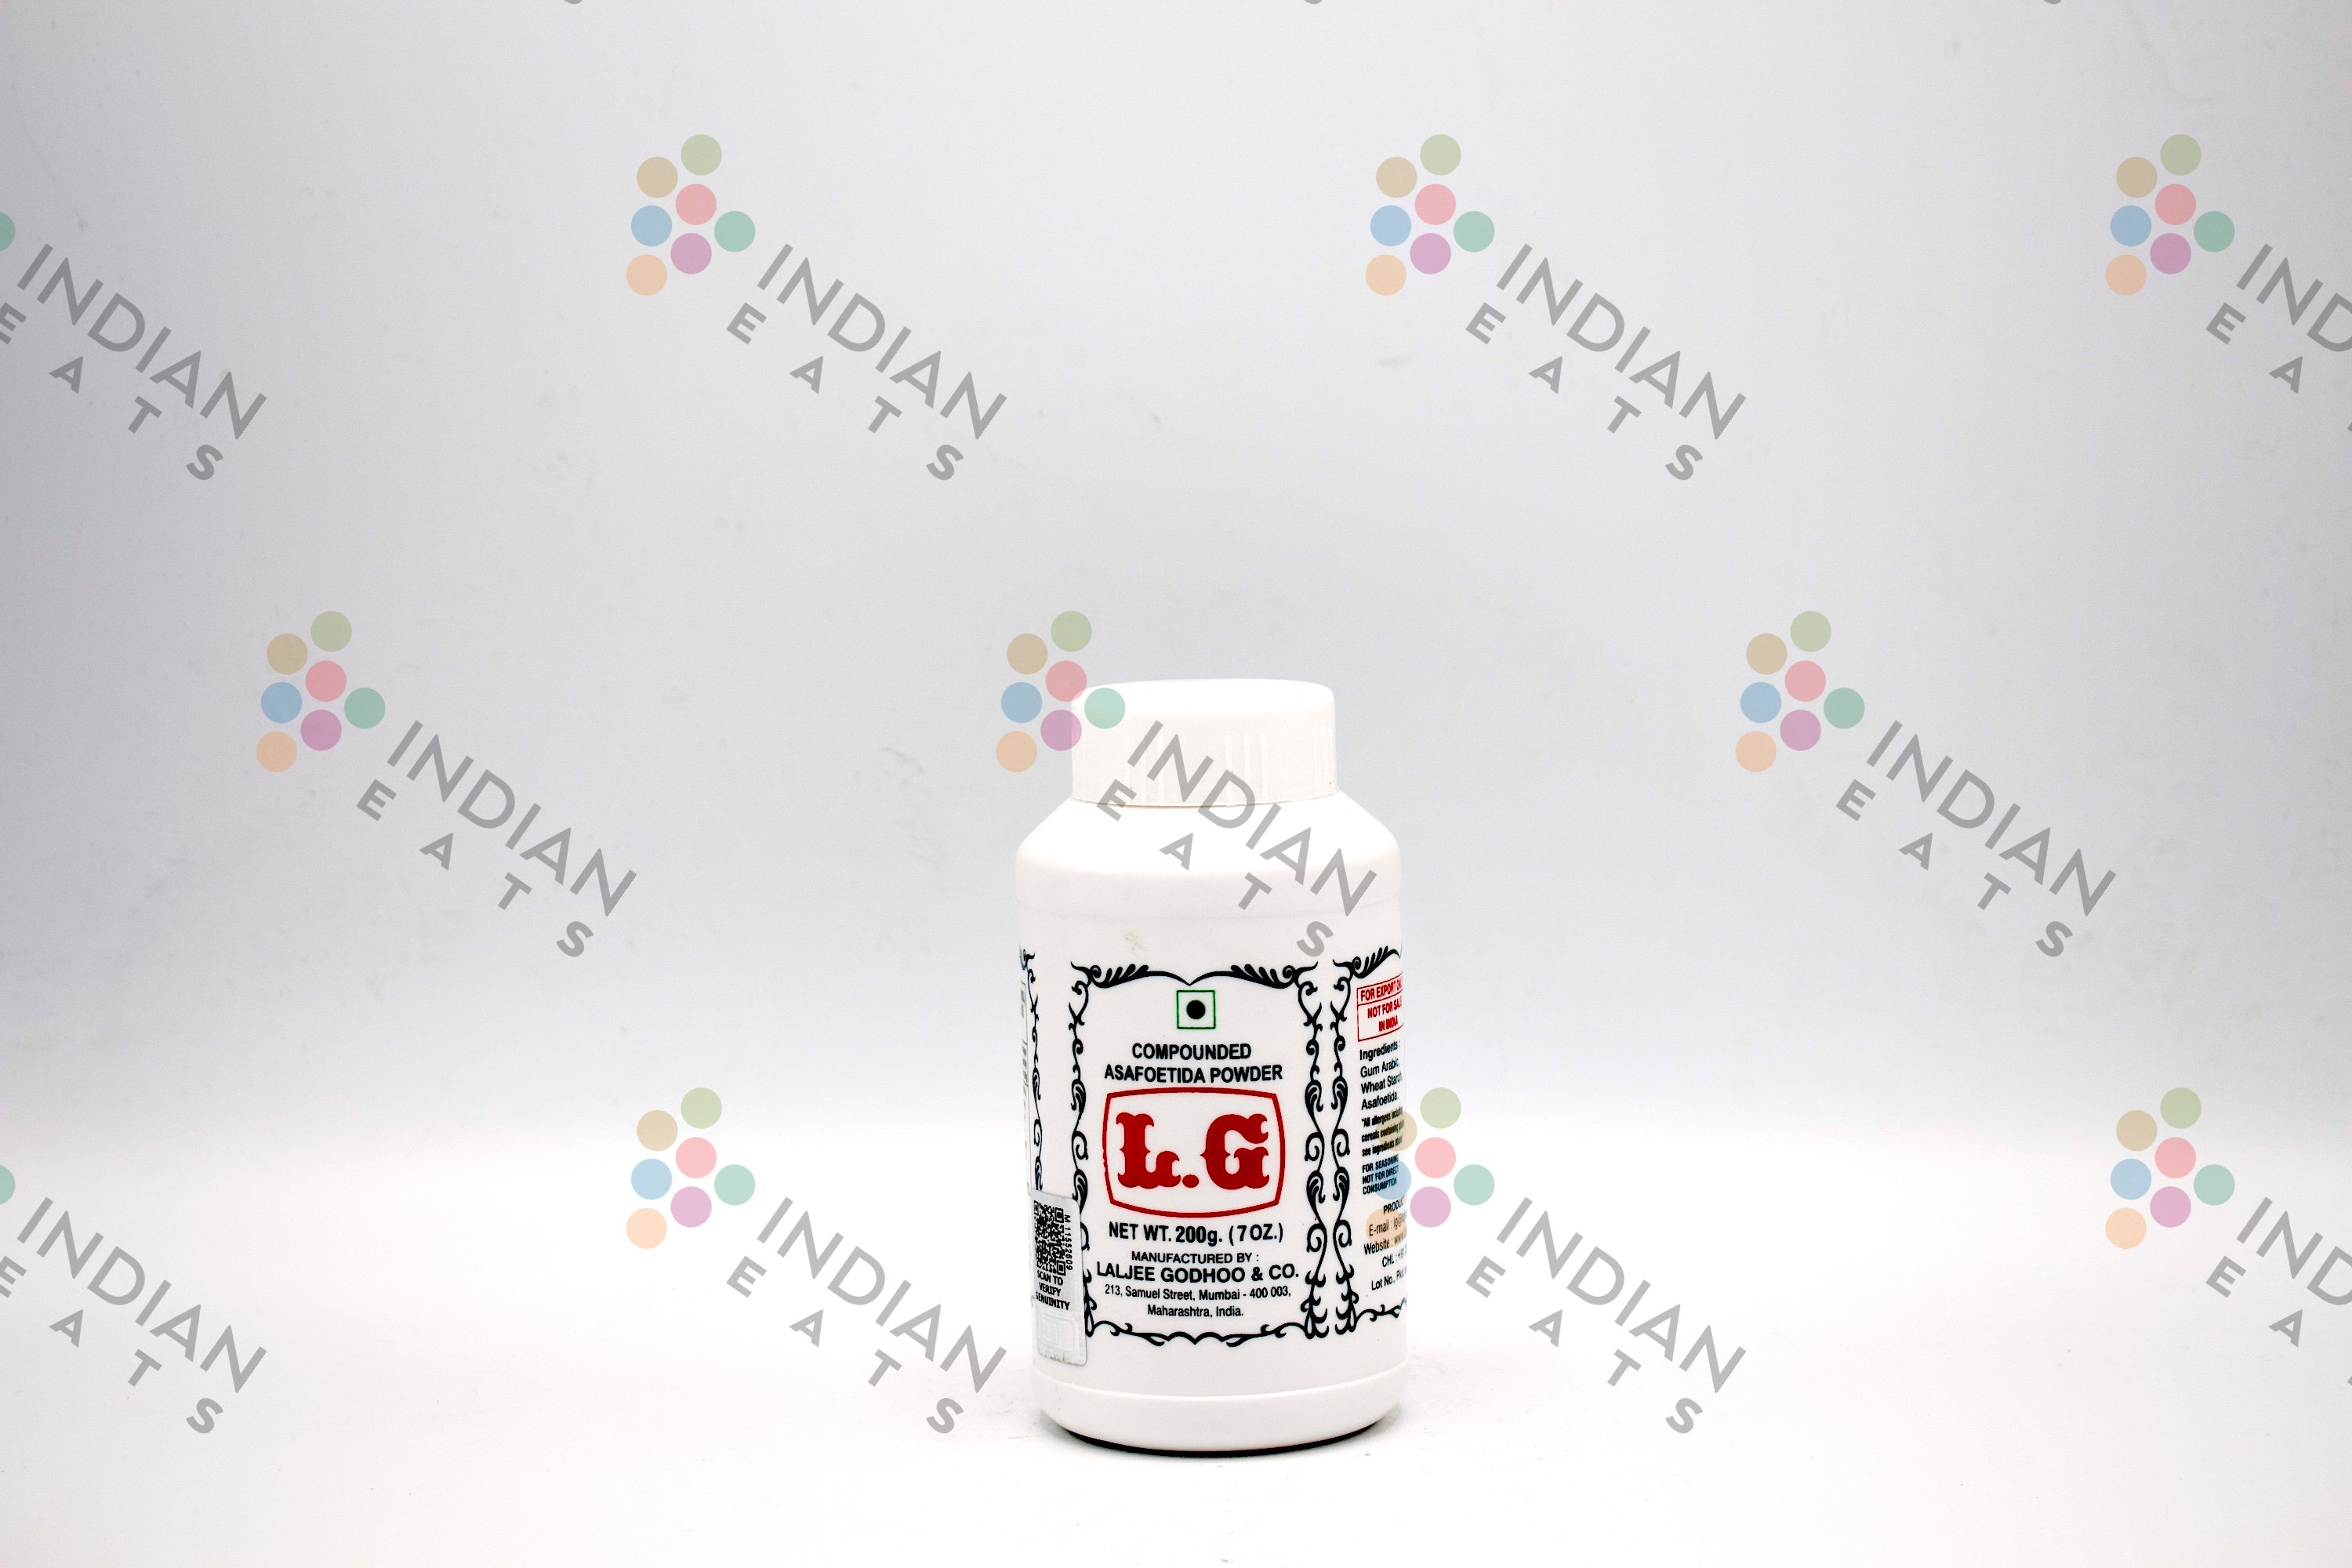 Buy LG Compounded Asafoetida Cake 100g Online - Lulu Hypermarket India